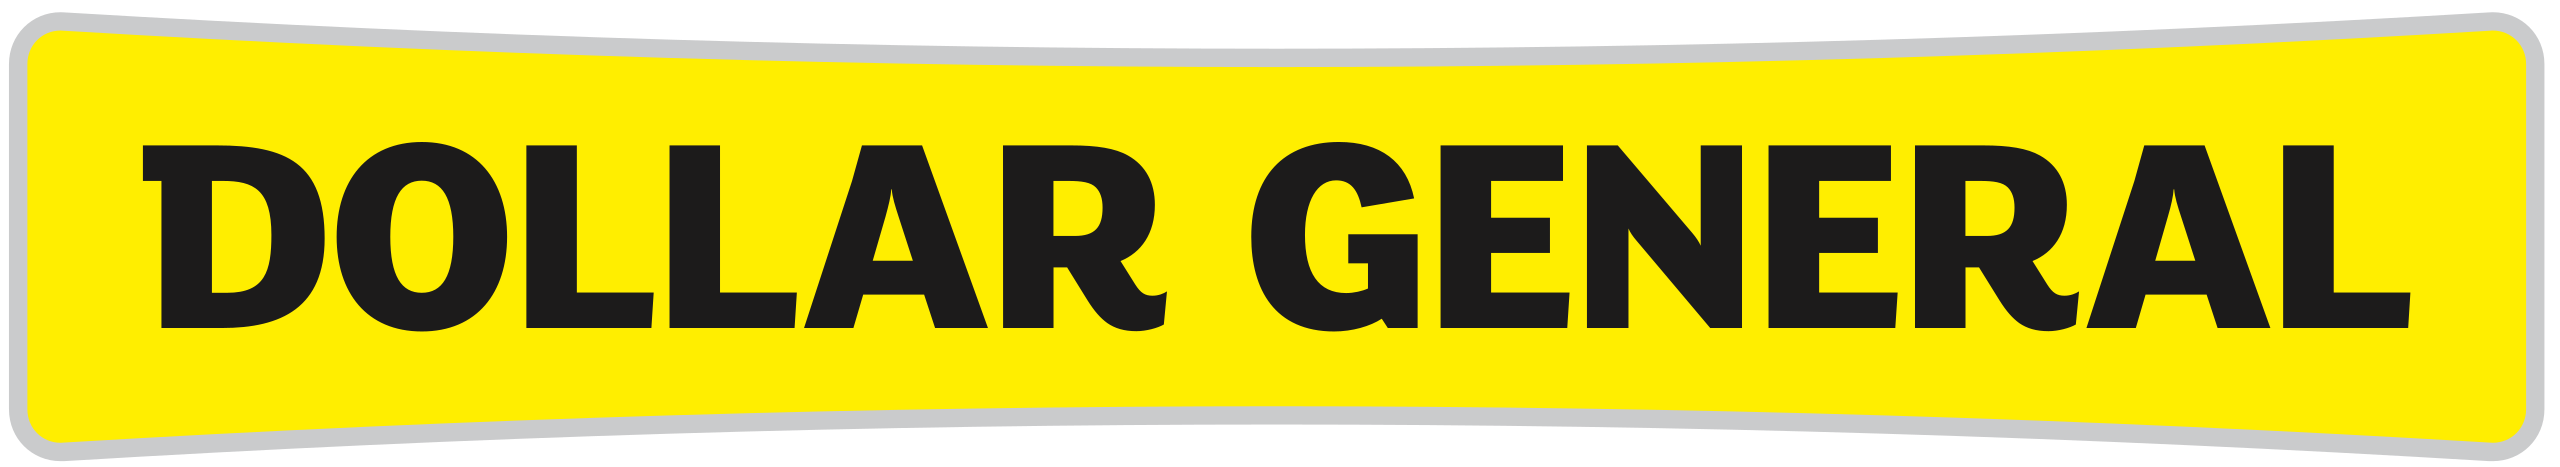 Dollar General Logo PNG Free Image